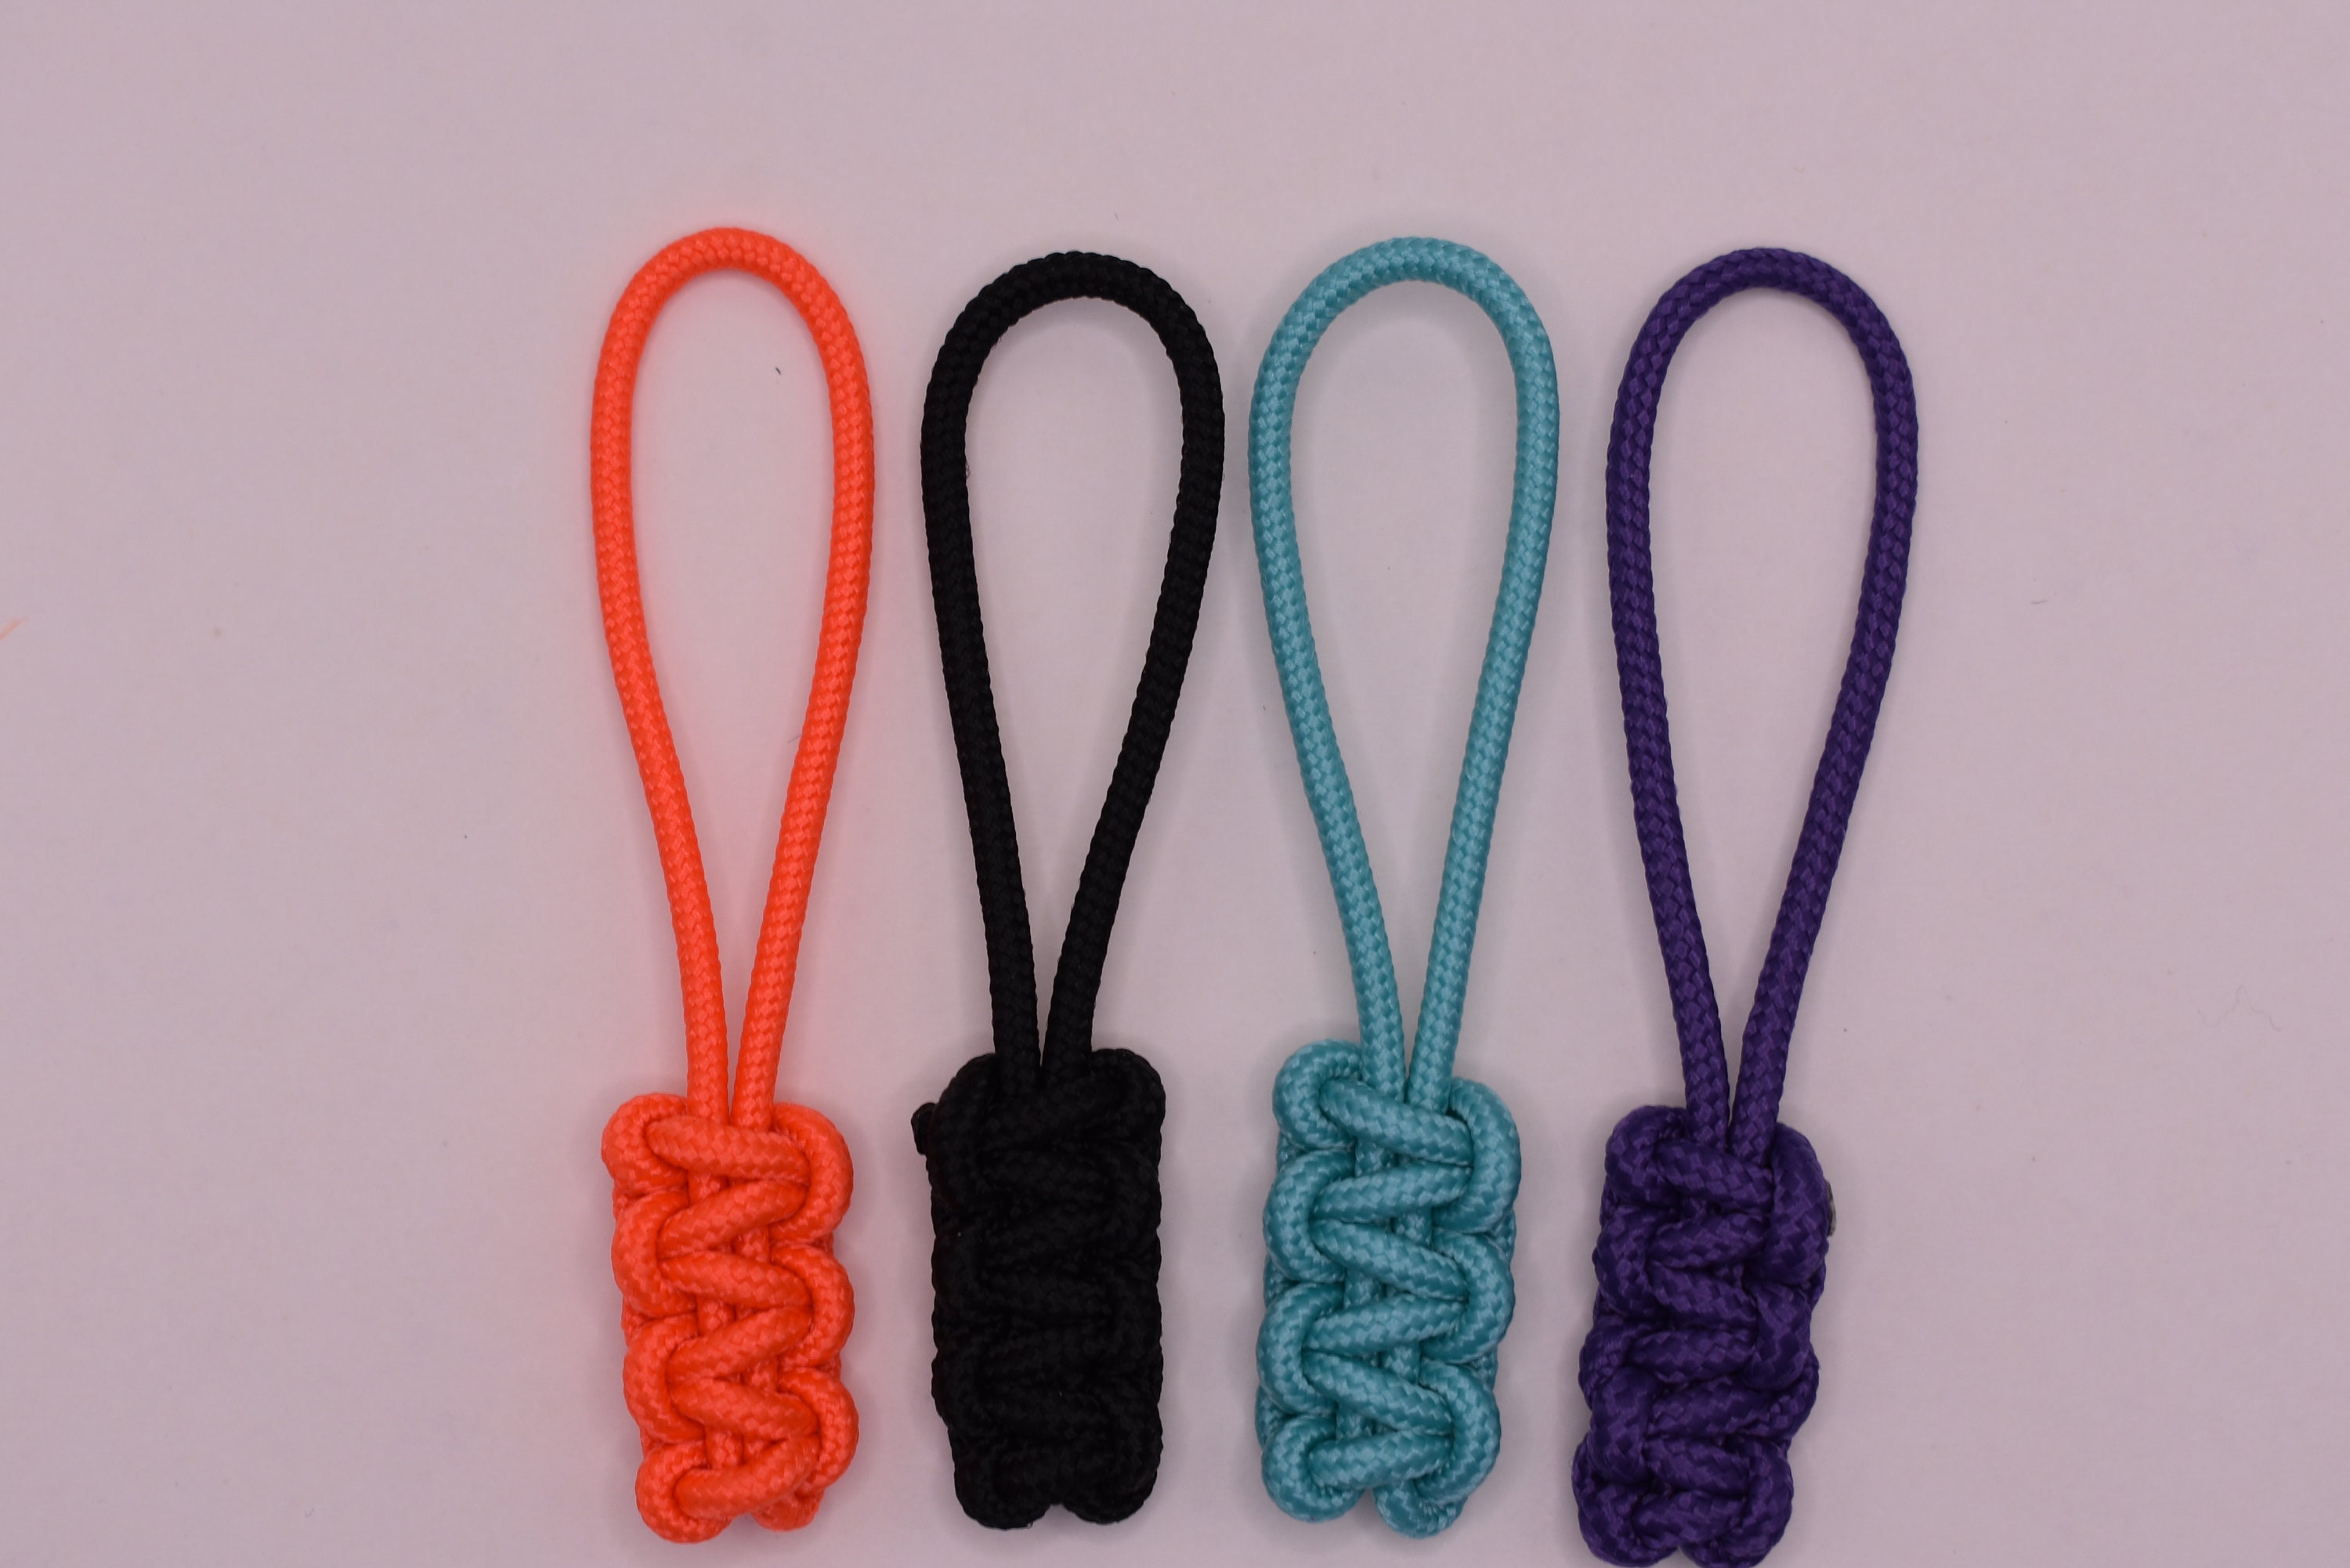 Replaced broken Scuba 1/2 zip zipper pull with Glow On hair tie